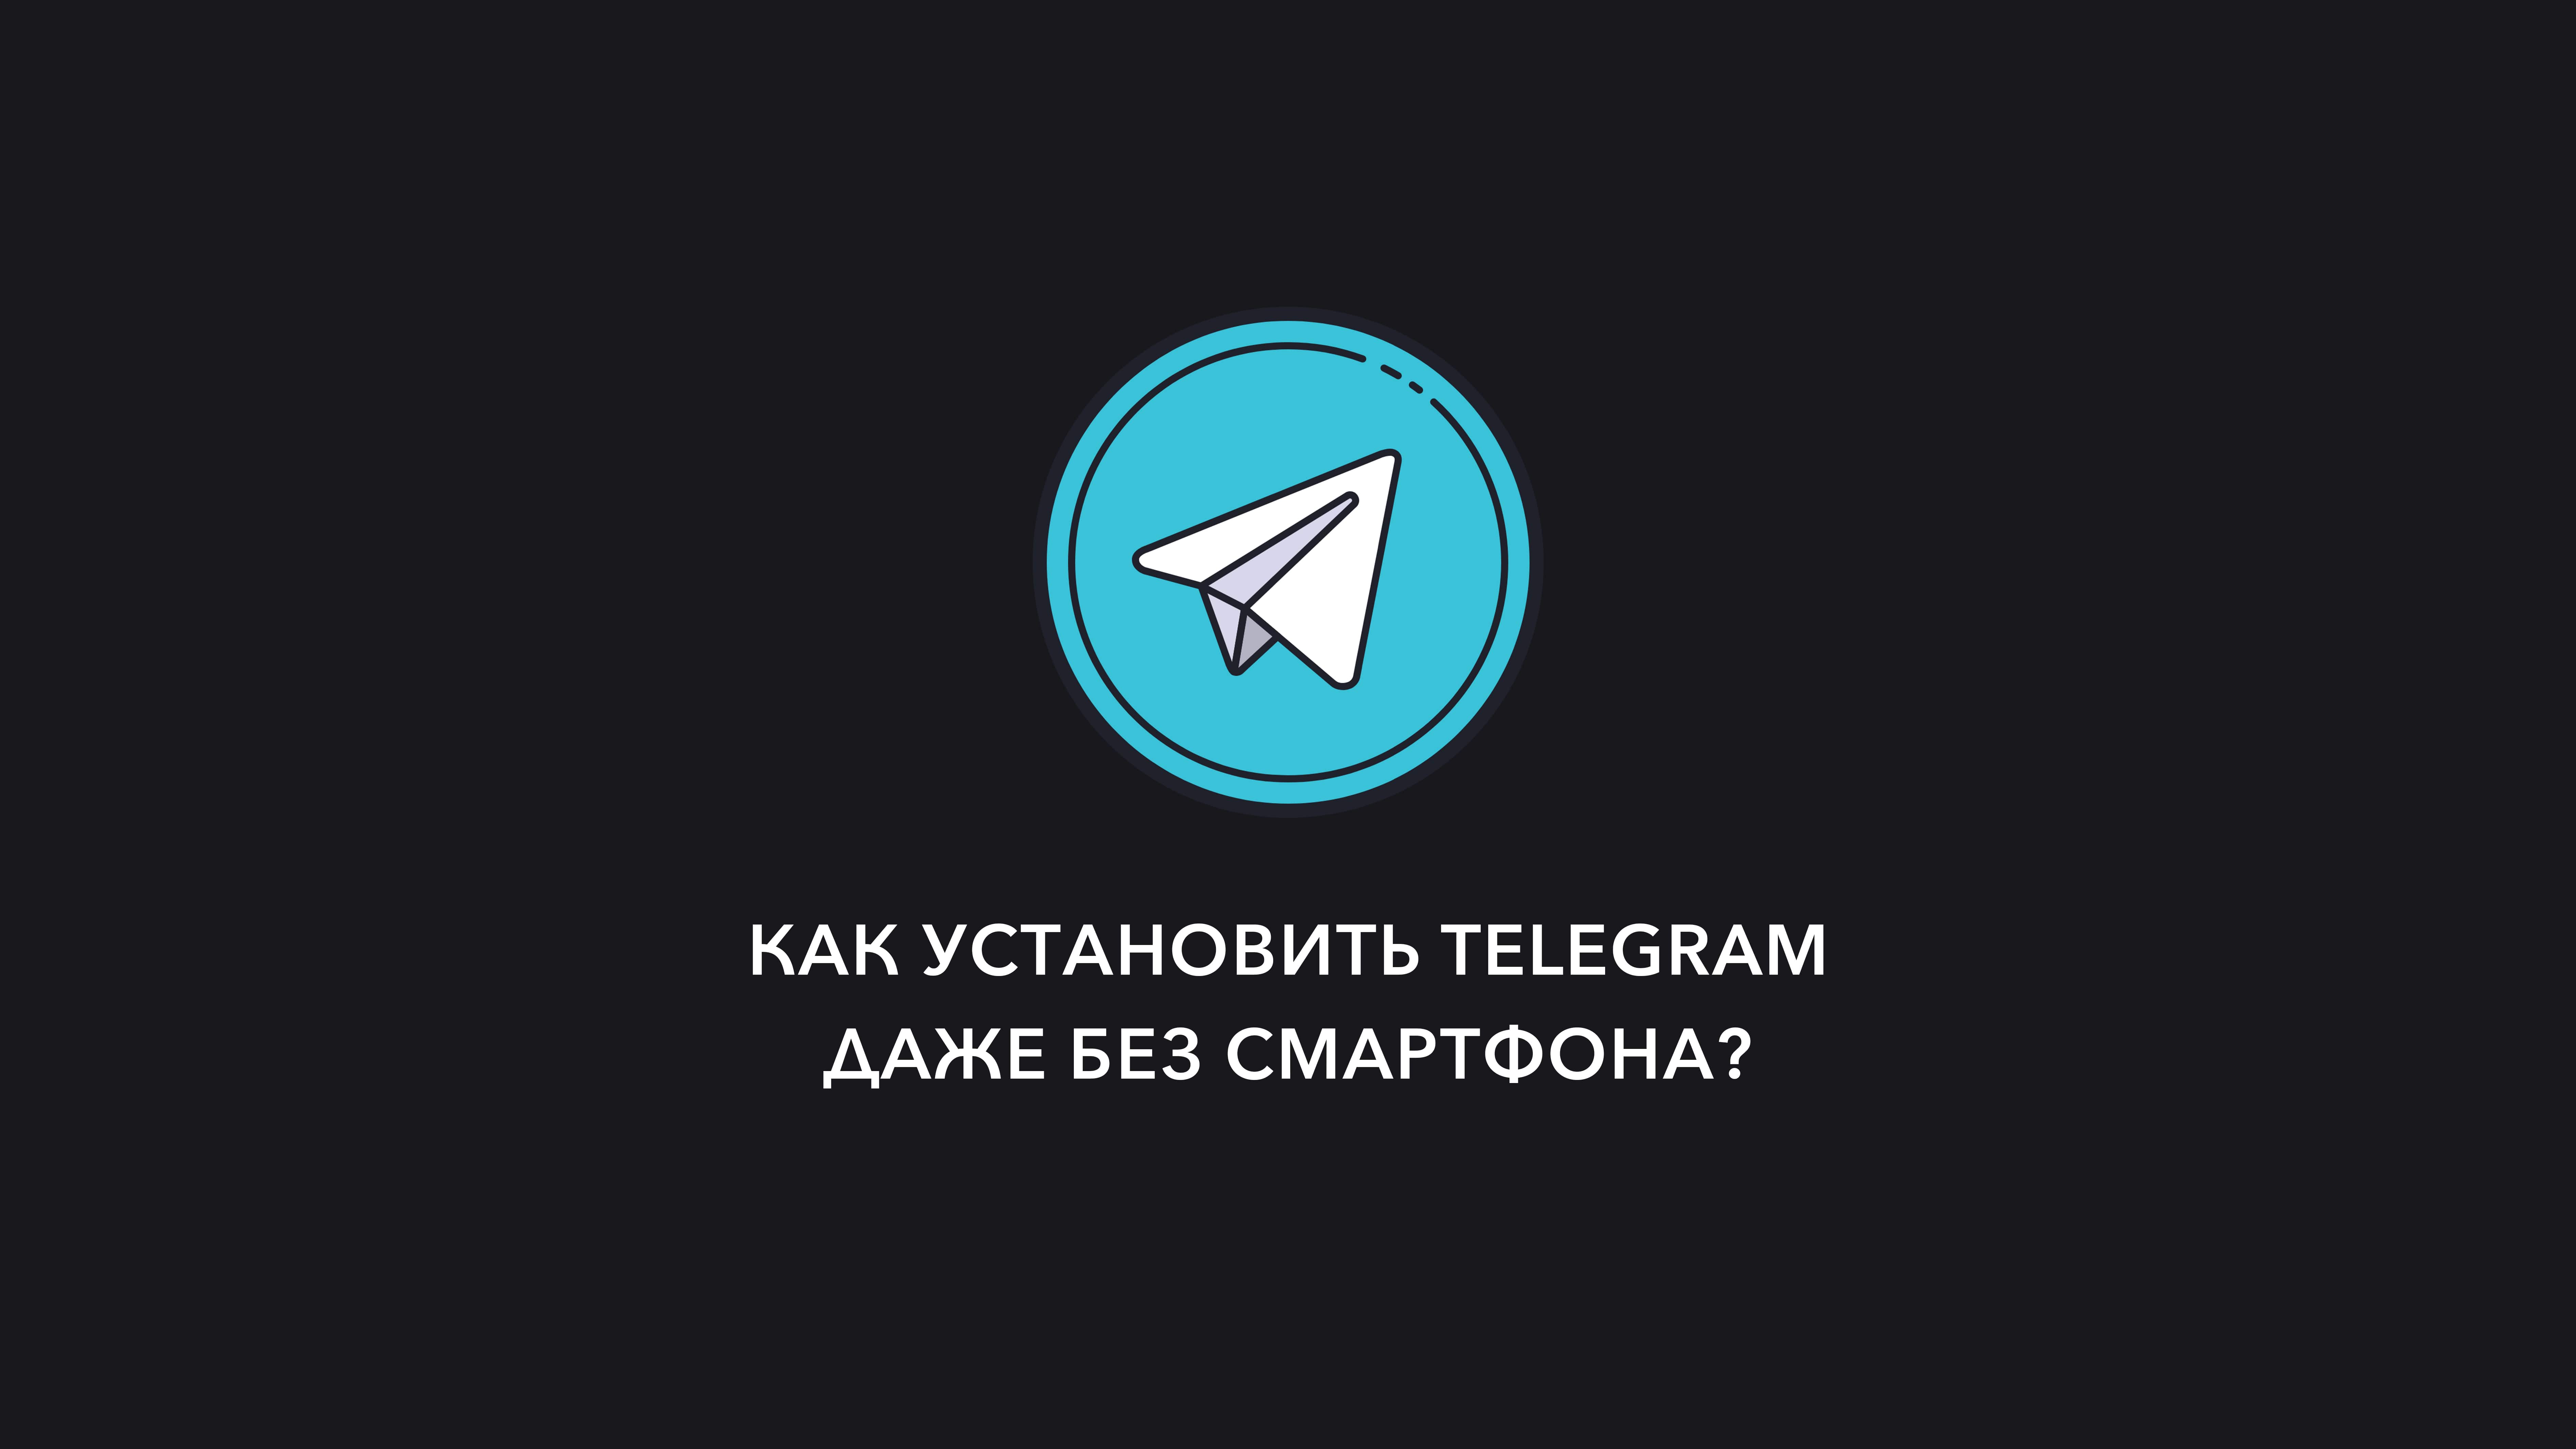 Телеграмм установить на телефон андроид русском языке бесплатно фото 50